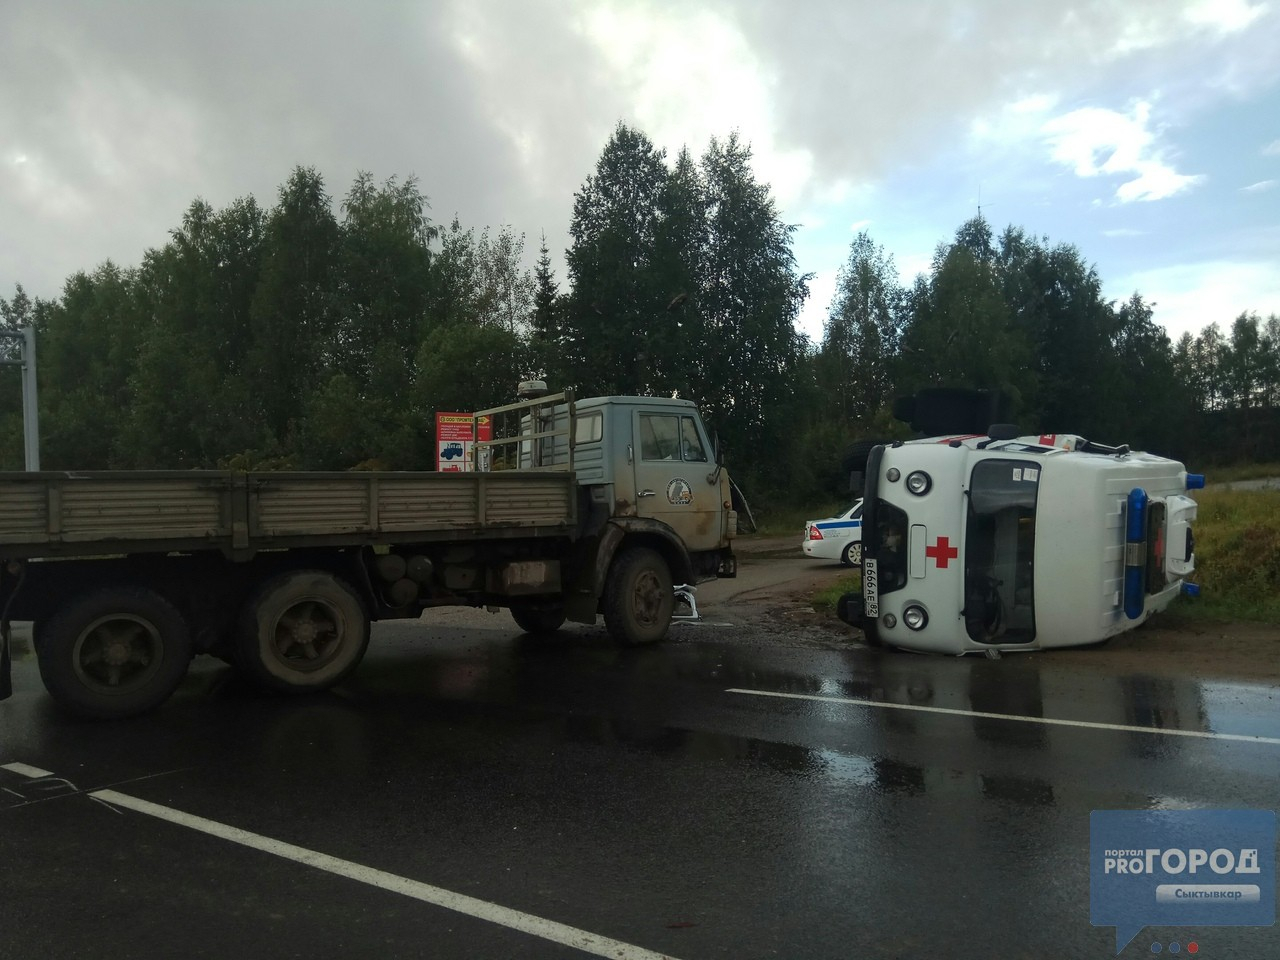 Появились фото с места ДТП в Сыктывкаре, где медицинский автомобиль врезался в фуру